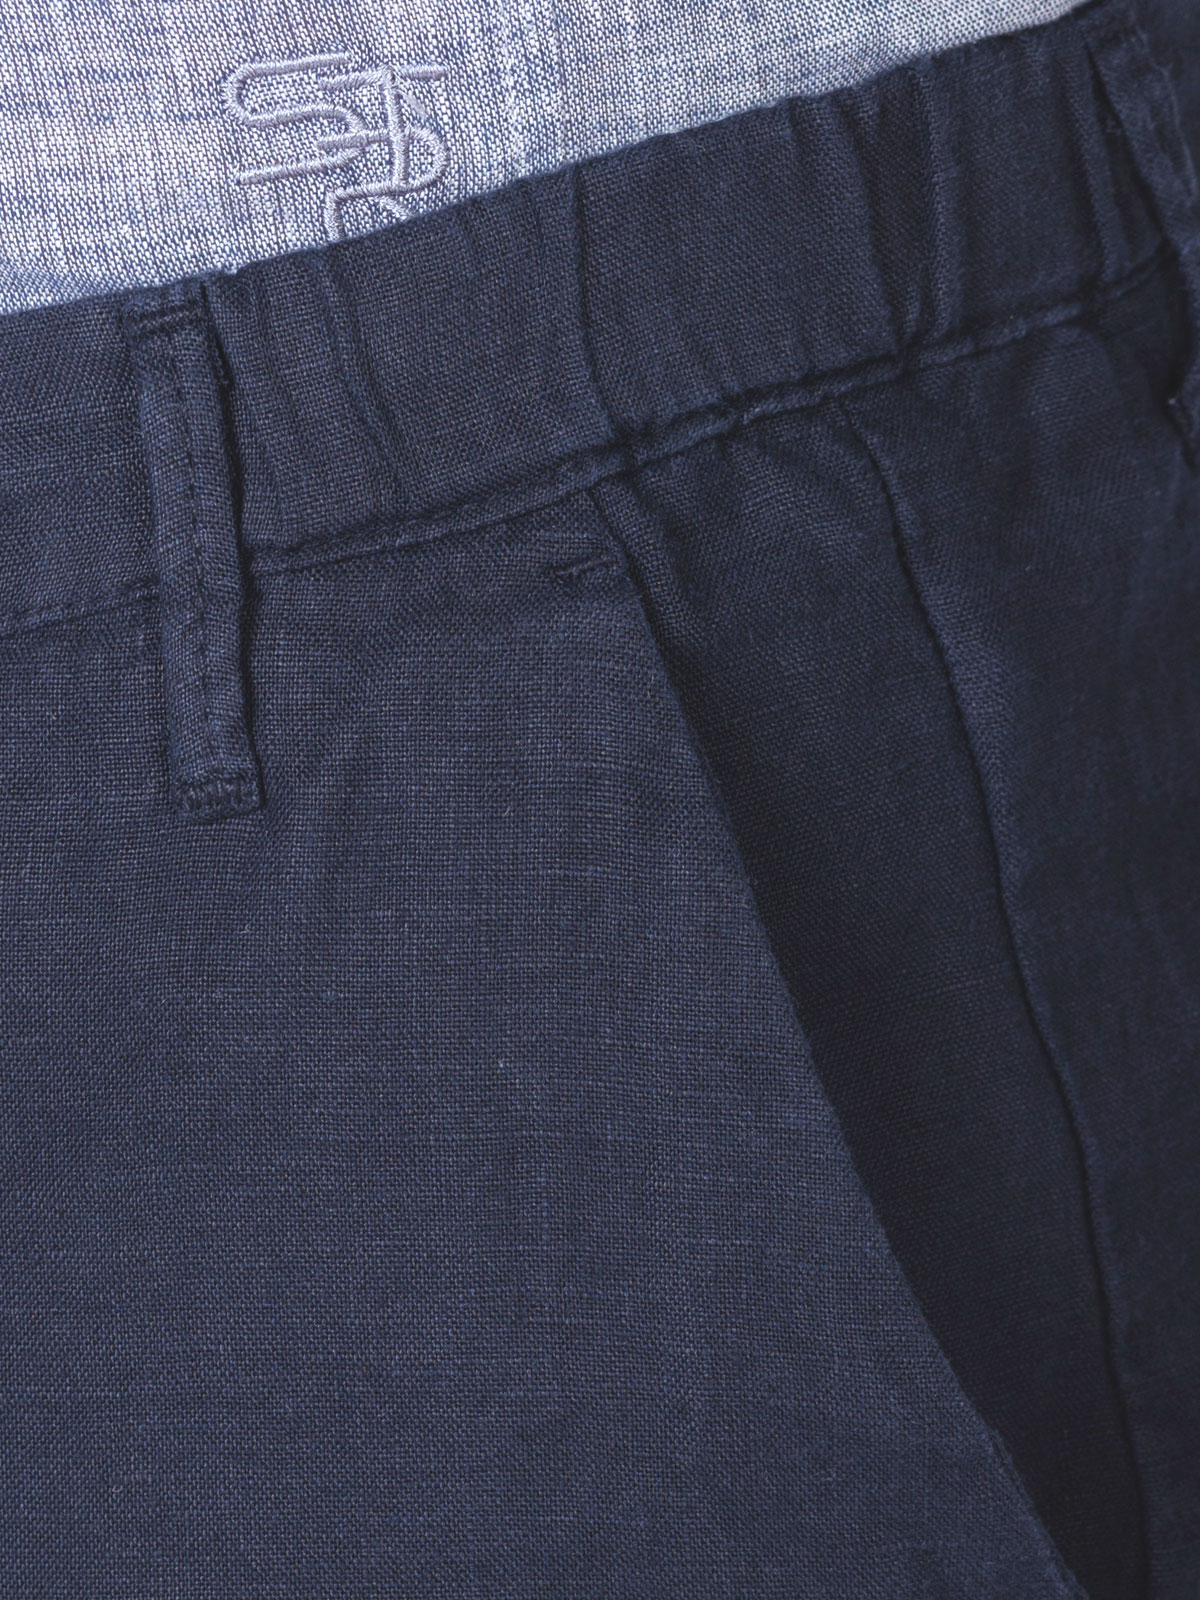 Ленен мъжки панталон в тъмно синьо - 60291 118.00 лв img3